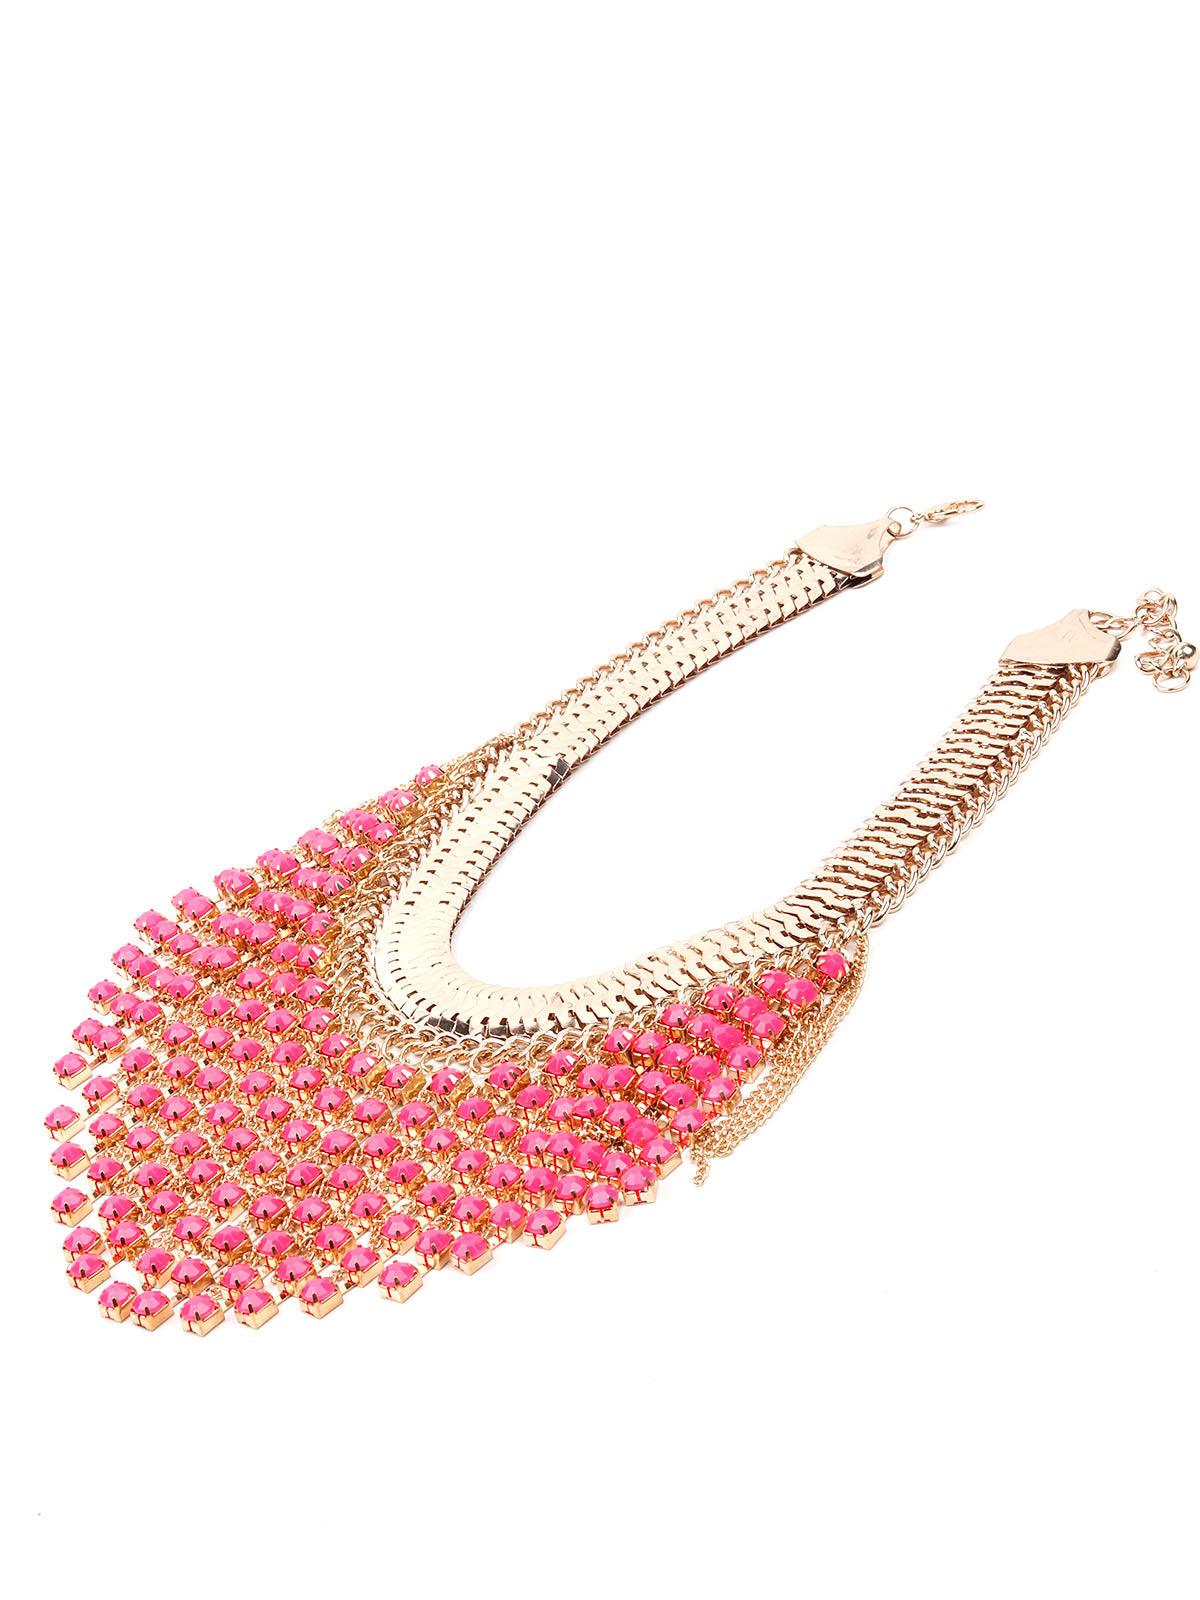 Boho pink and gold tassel drop necklace - Odette